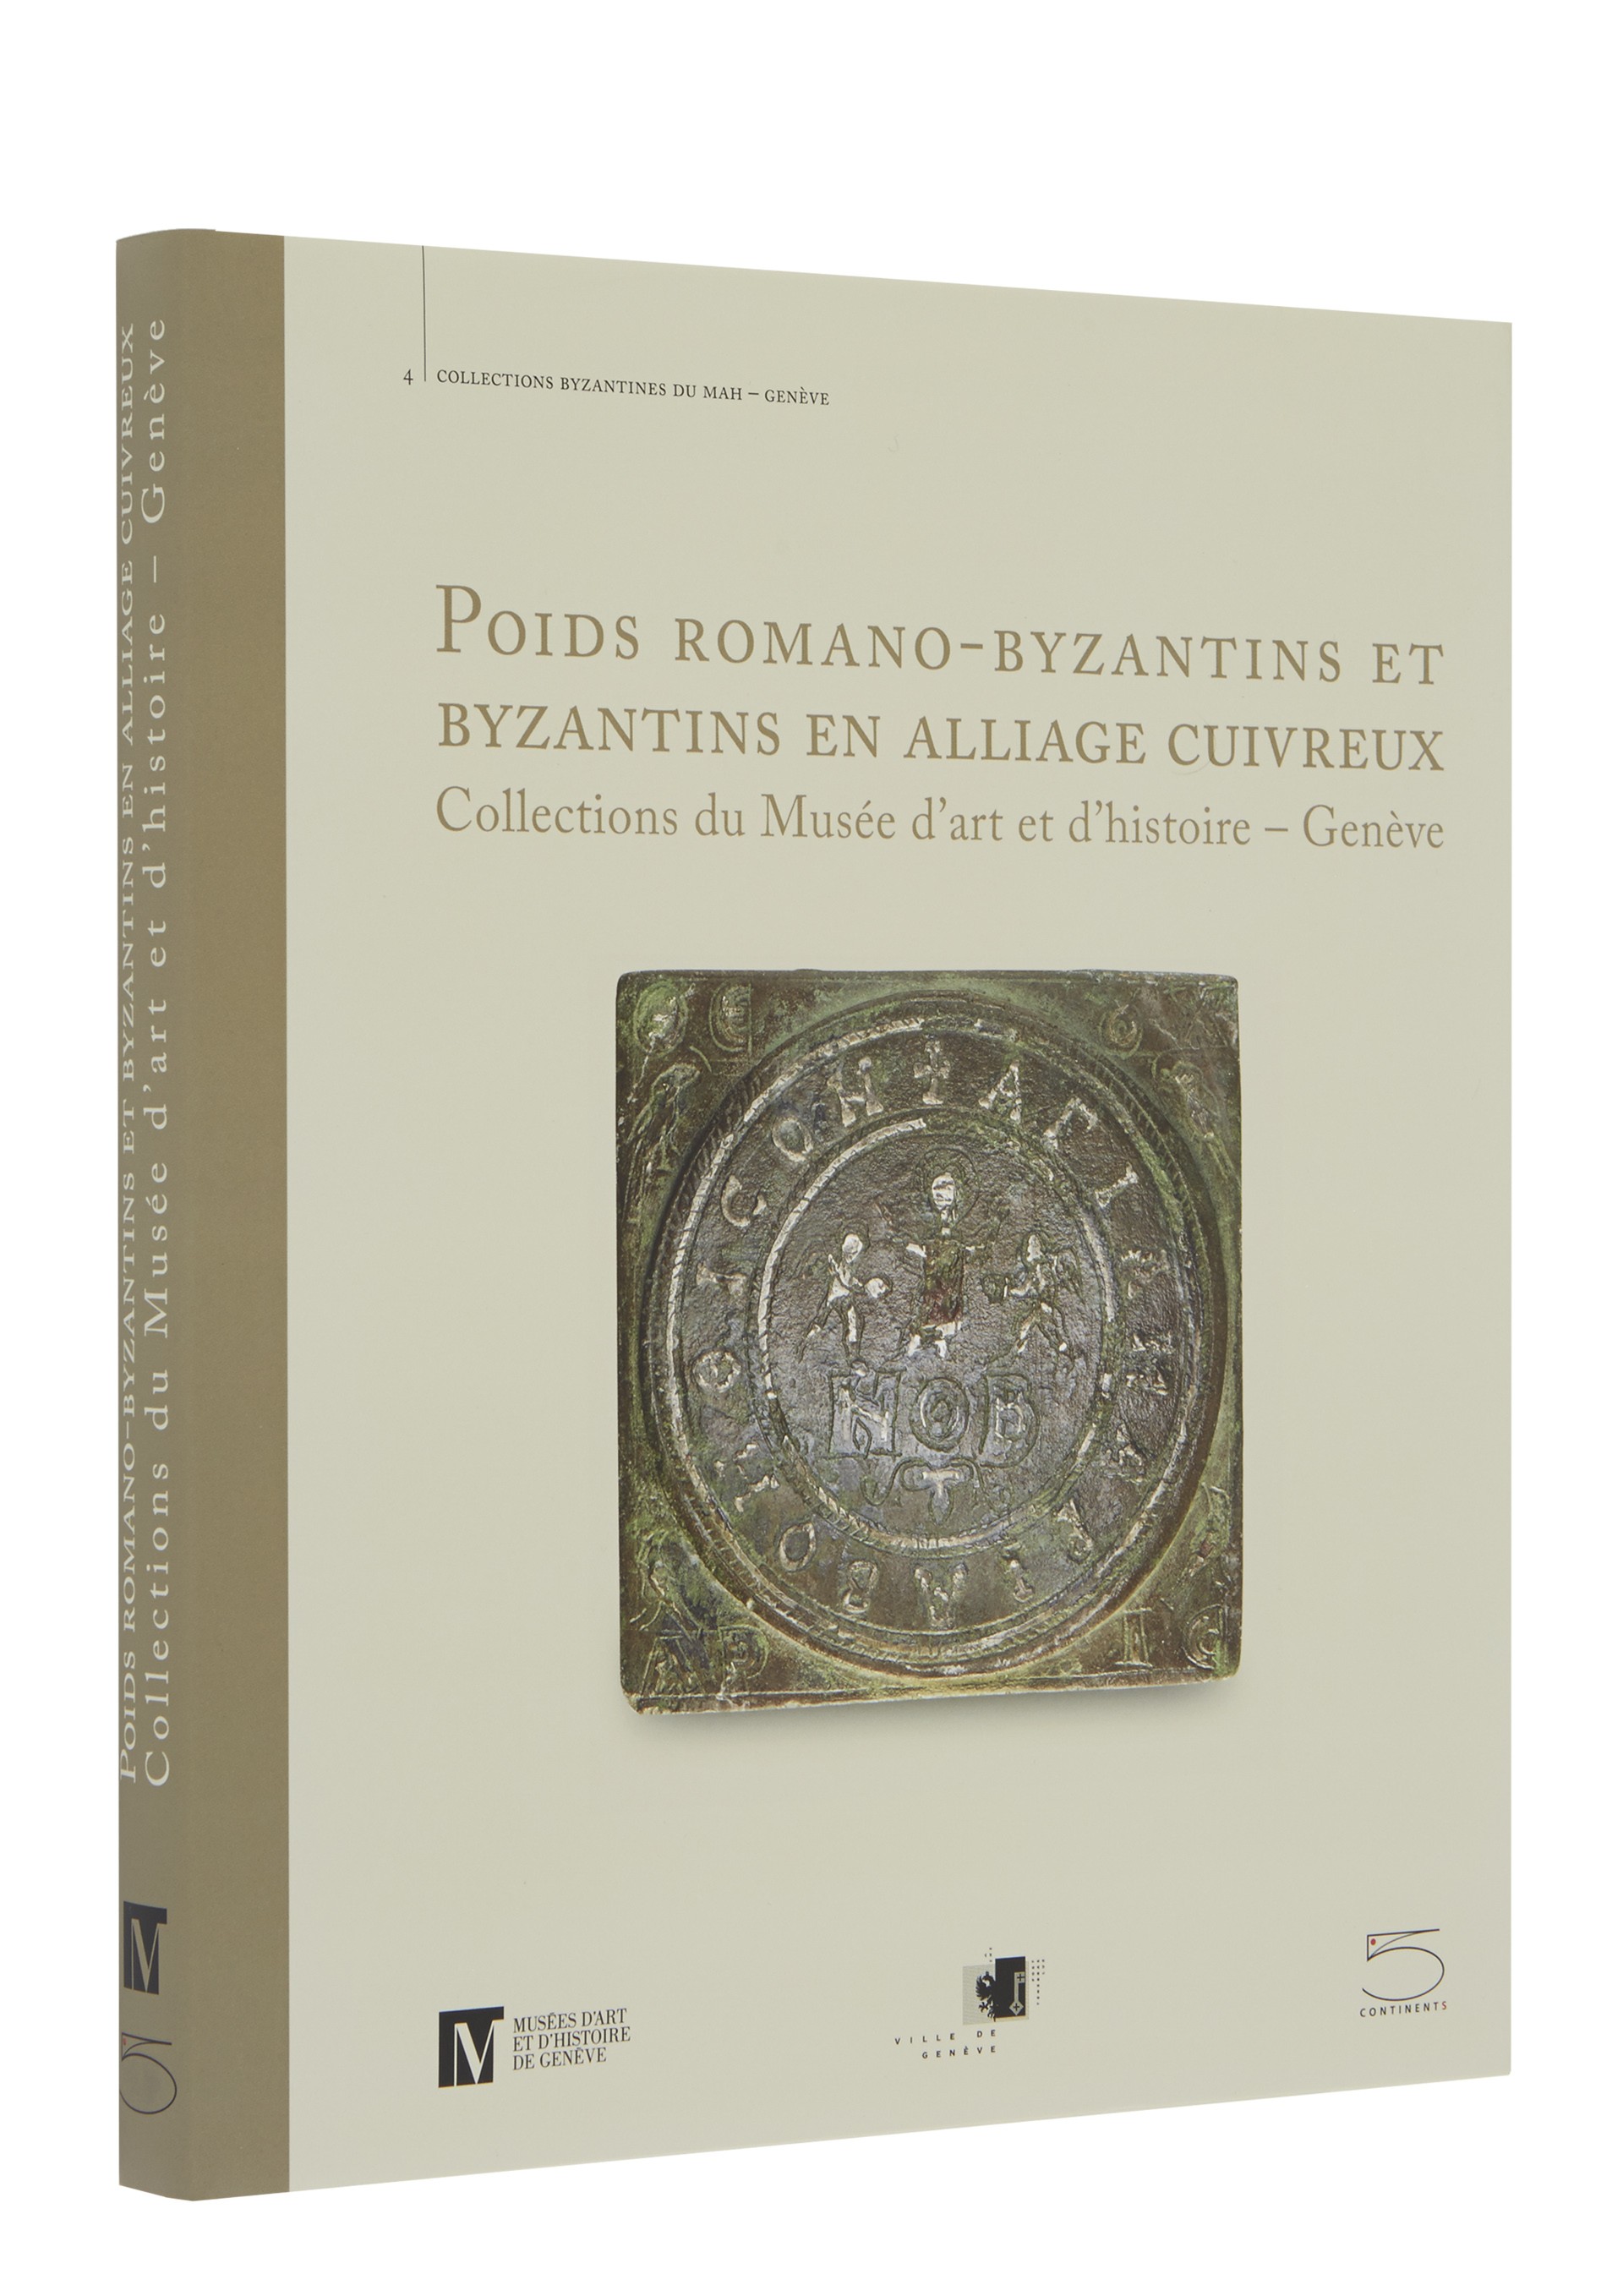 Poids romano-byzantins et byzantins en alliage cuivreux